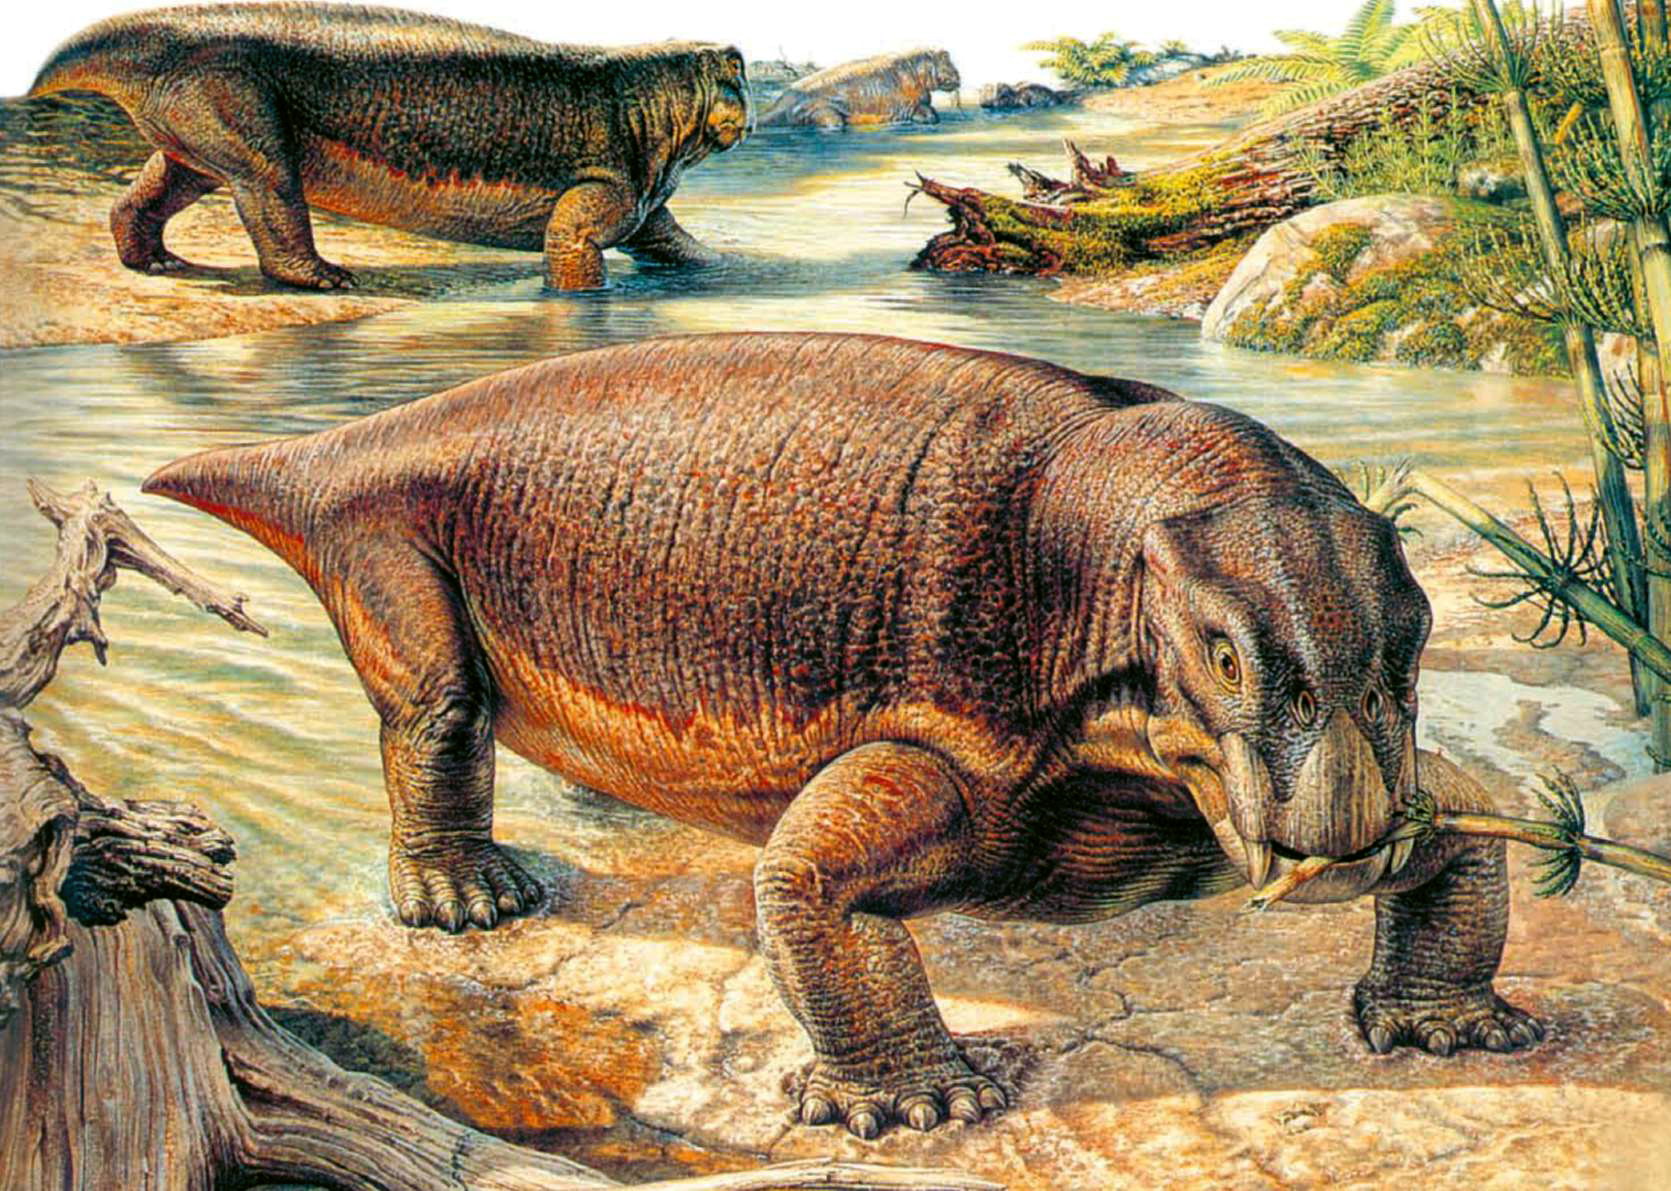 Мезозойская эра триас. Листрозавр Триасового периода. Триасовый период мезозойской эры. Терапсиды мезозойской эры. Терапсиды Триасового периода.